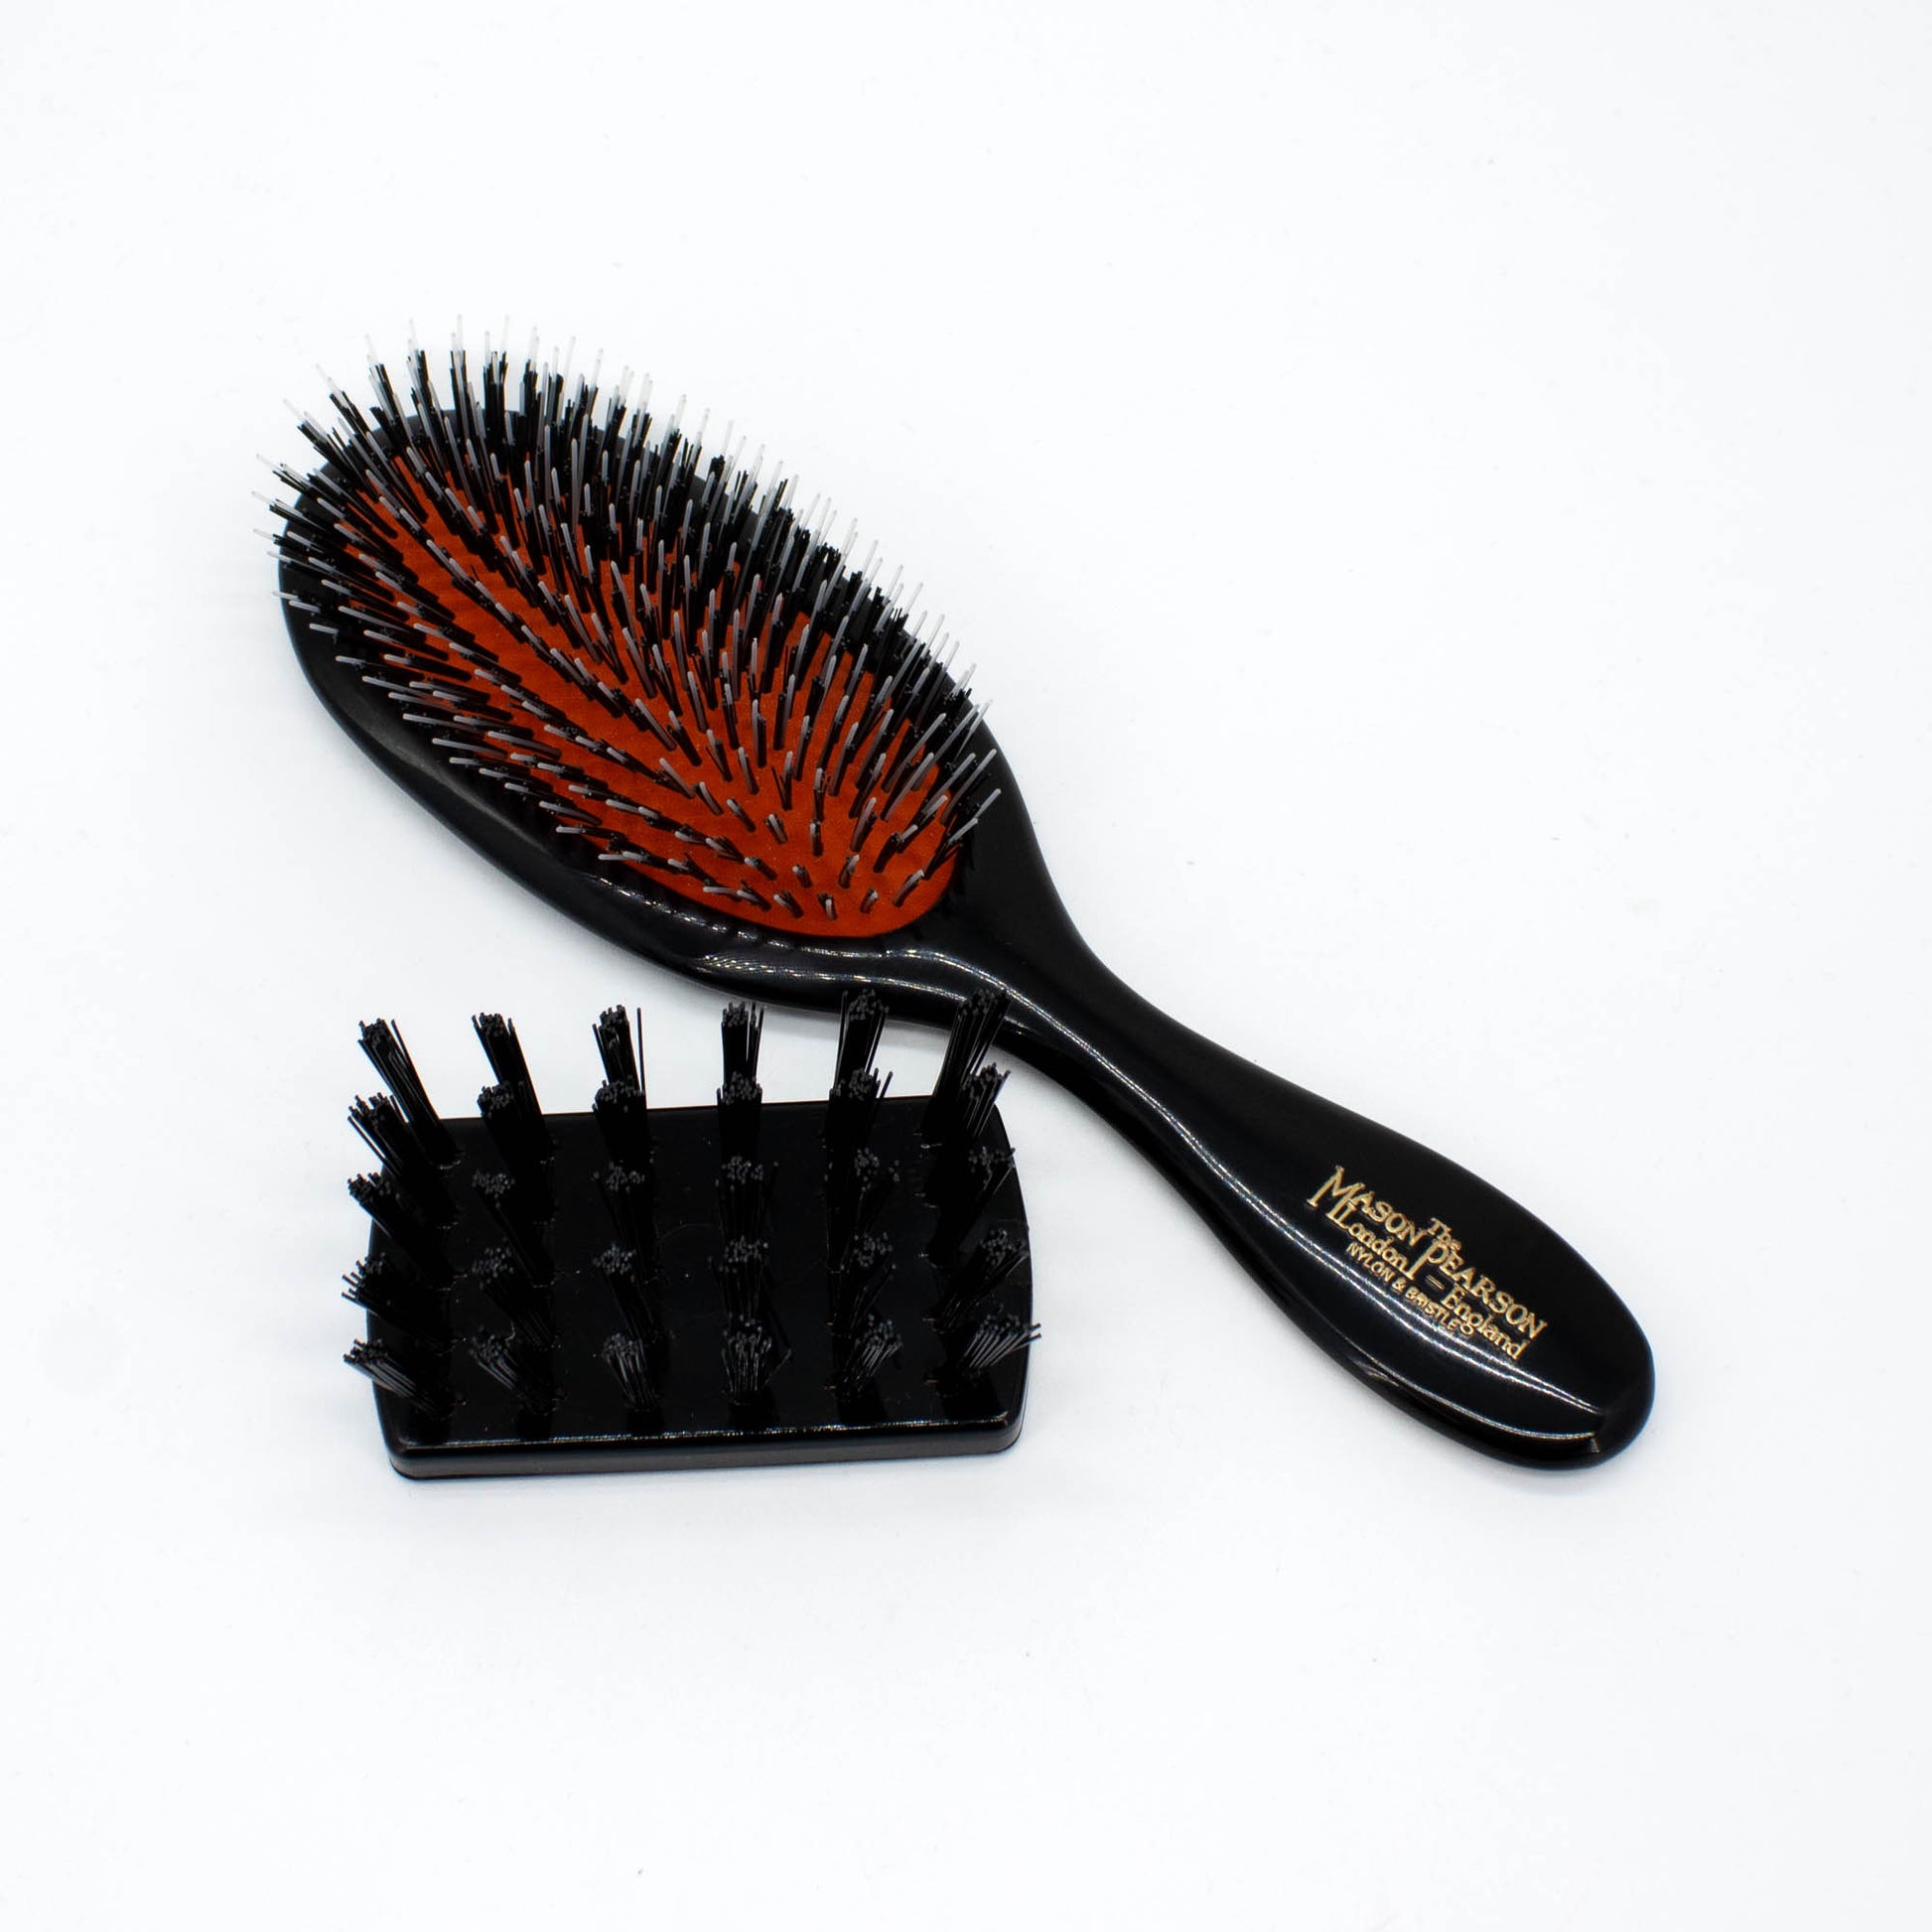 Mason Pearson Handy Mixed Bristle BN3 Hair Brush